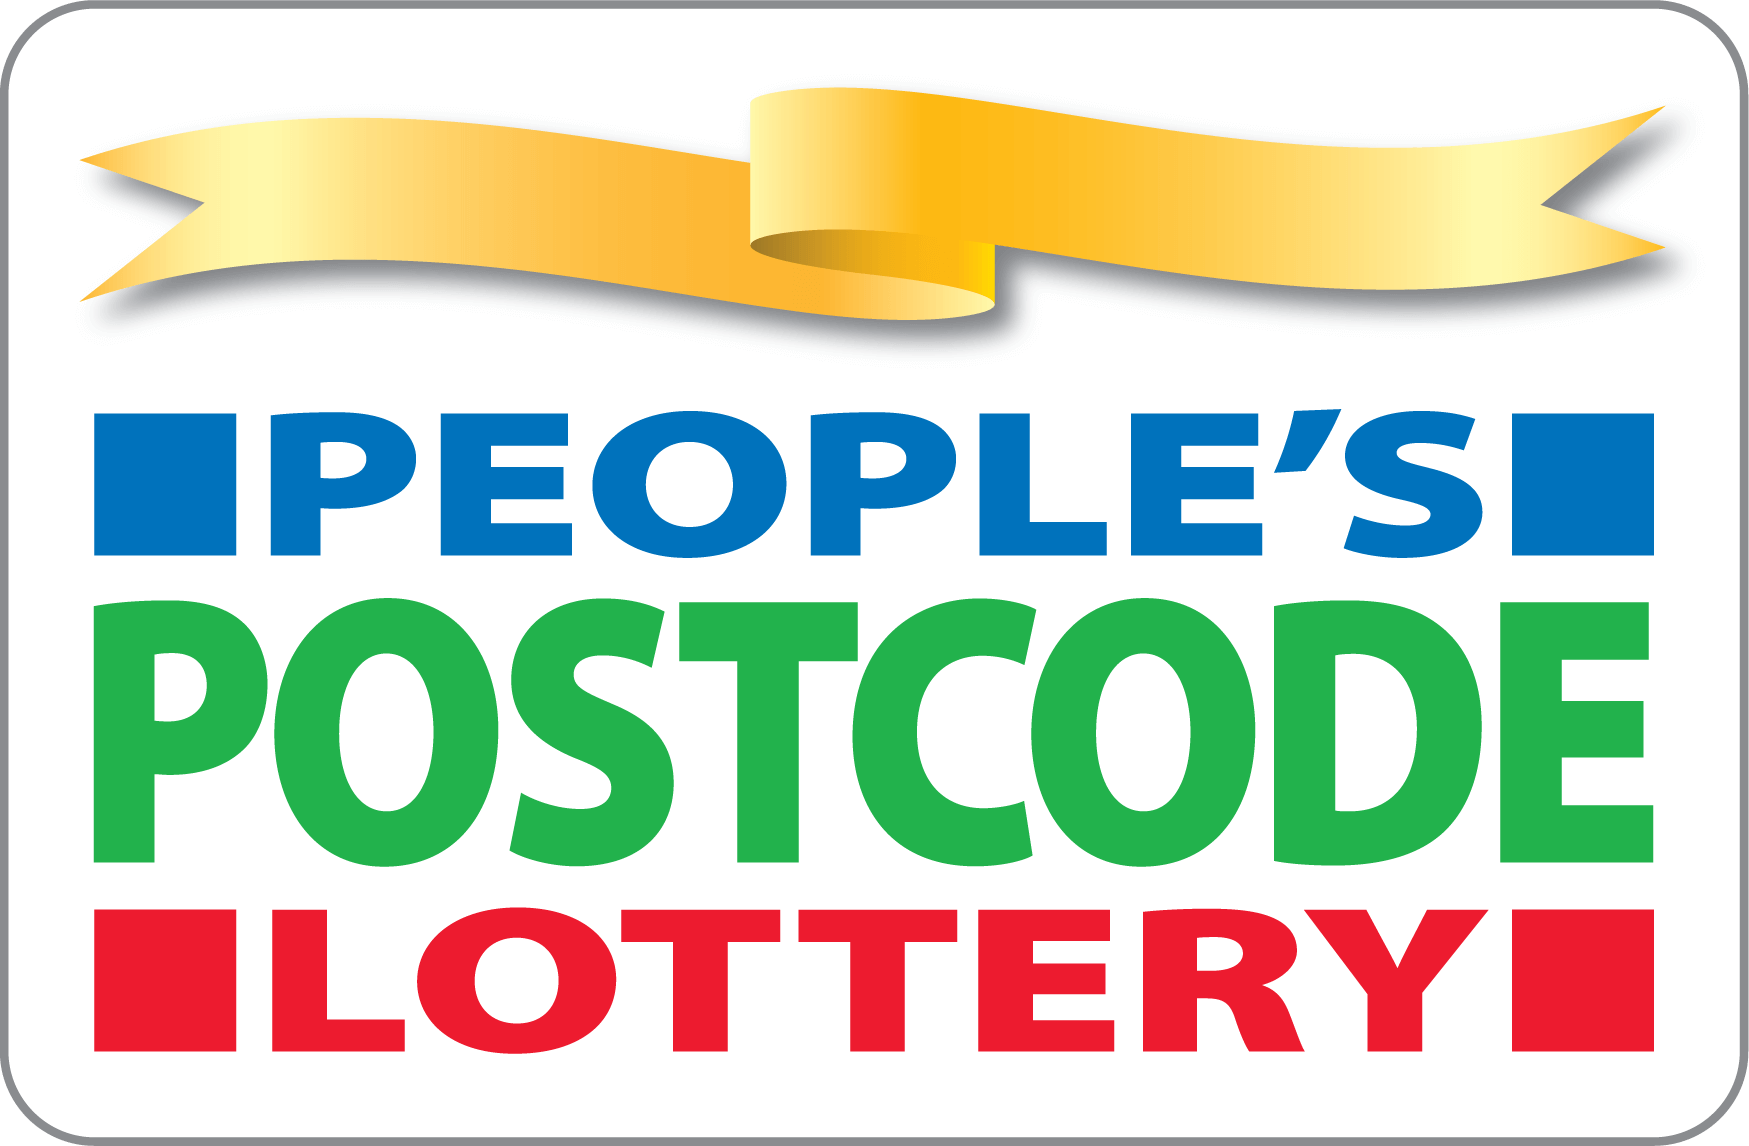 People postcode lottery